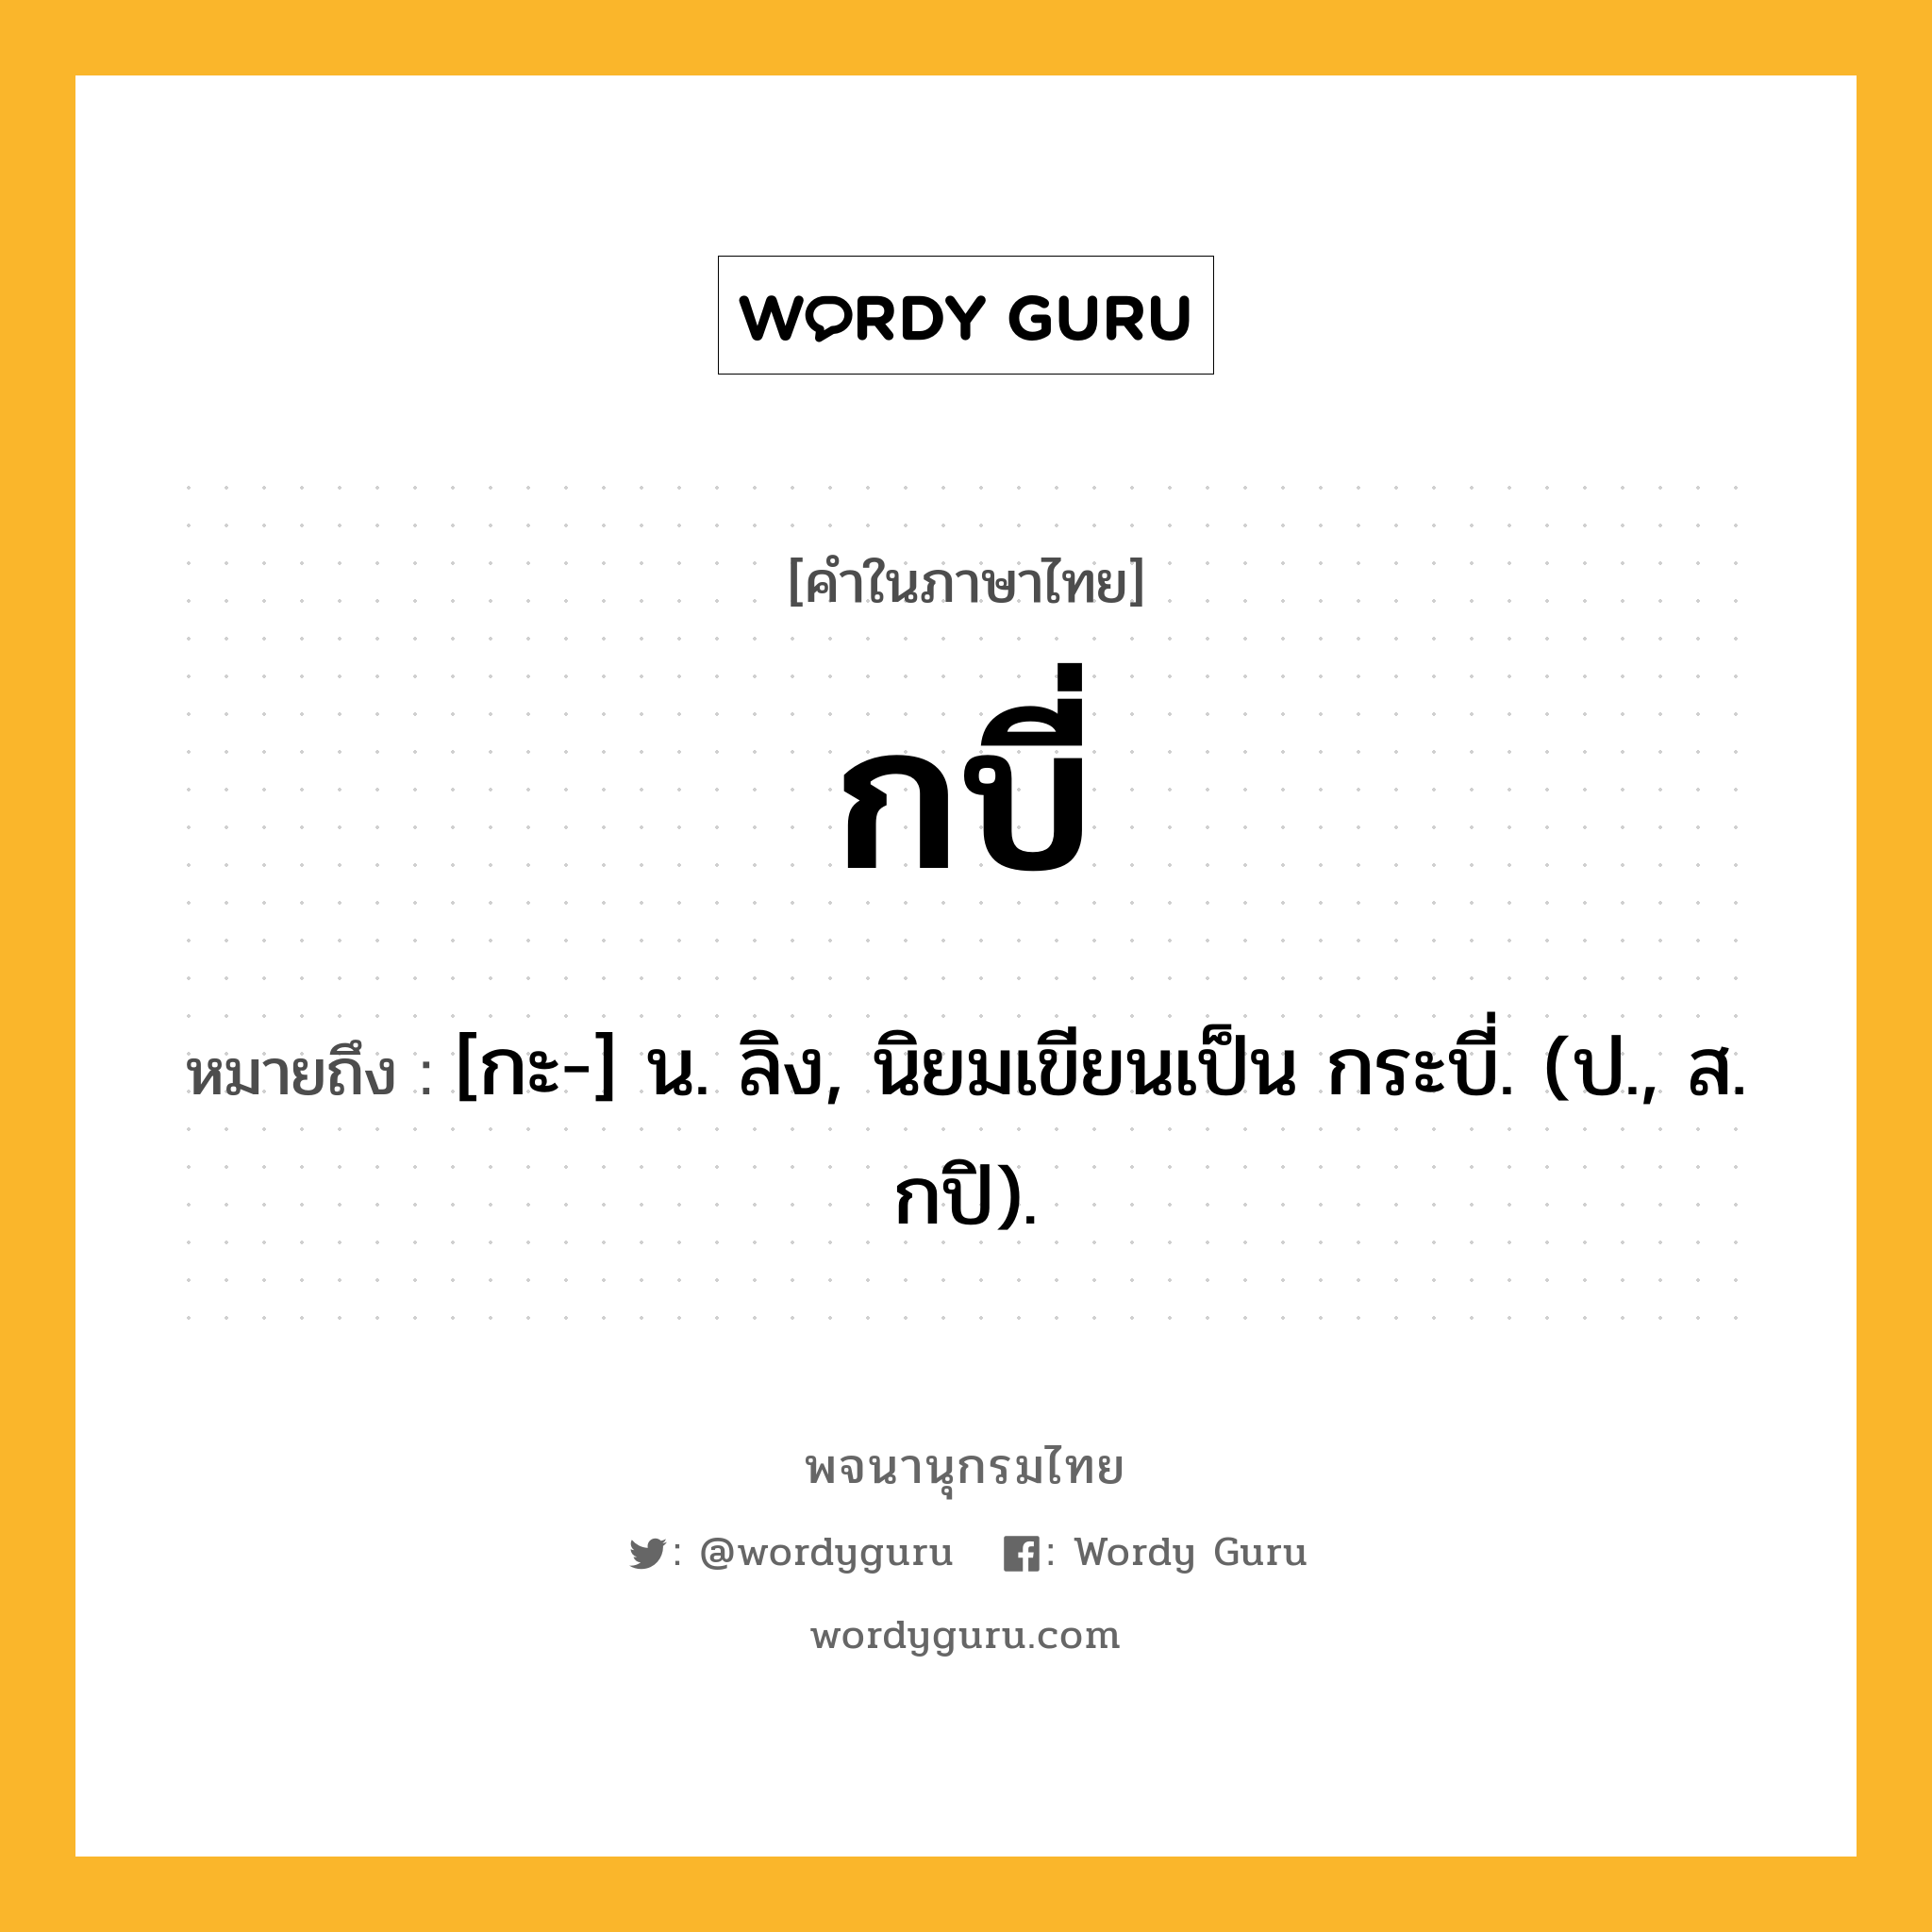 กบี่ หมายถึงอะไร?, คำในภาษาไทย กบี่ หมายถึง [กะ-] น. ลิง, นิยมเขียนเป็น กระบี่. (ป., ส. กปิ).